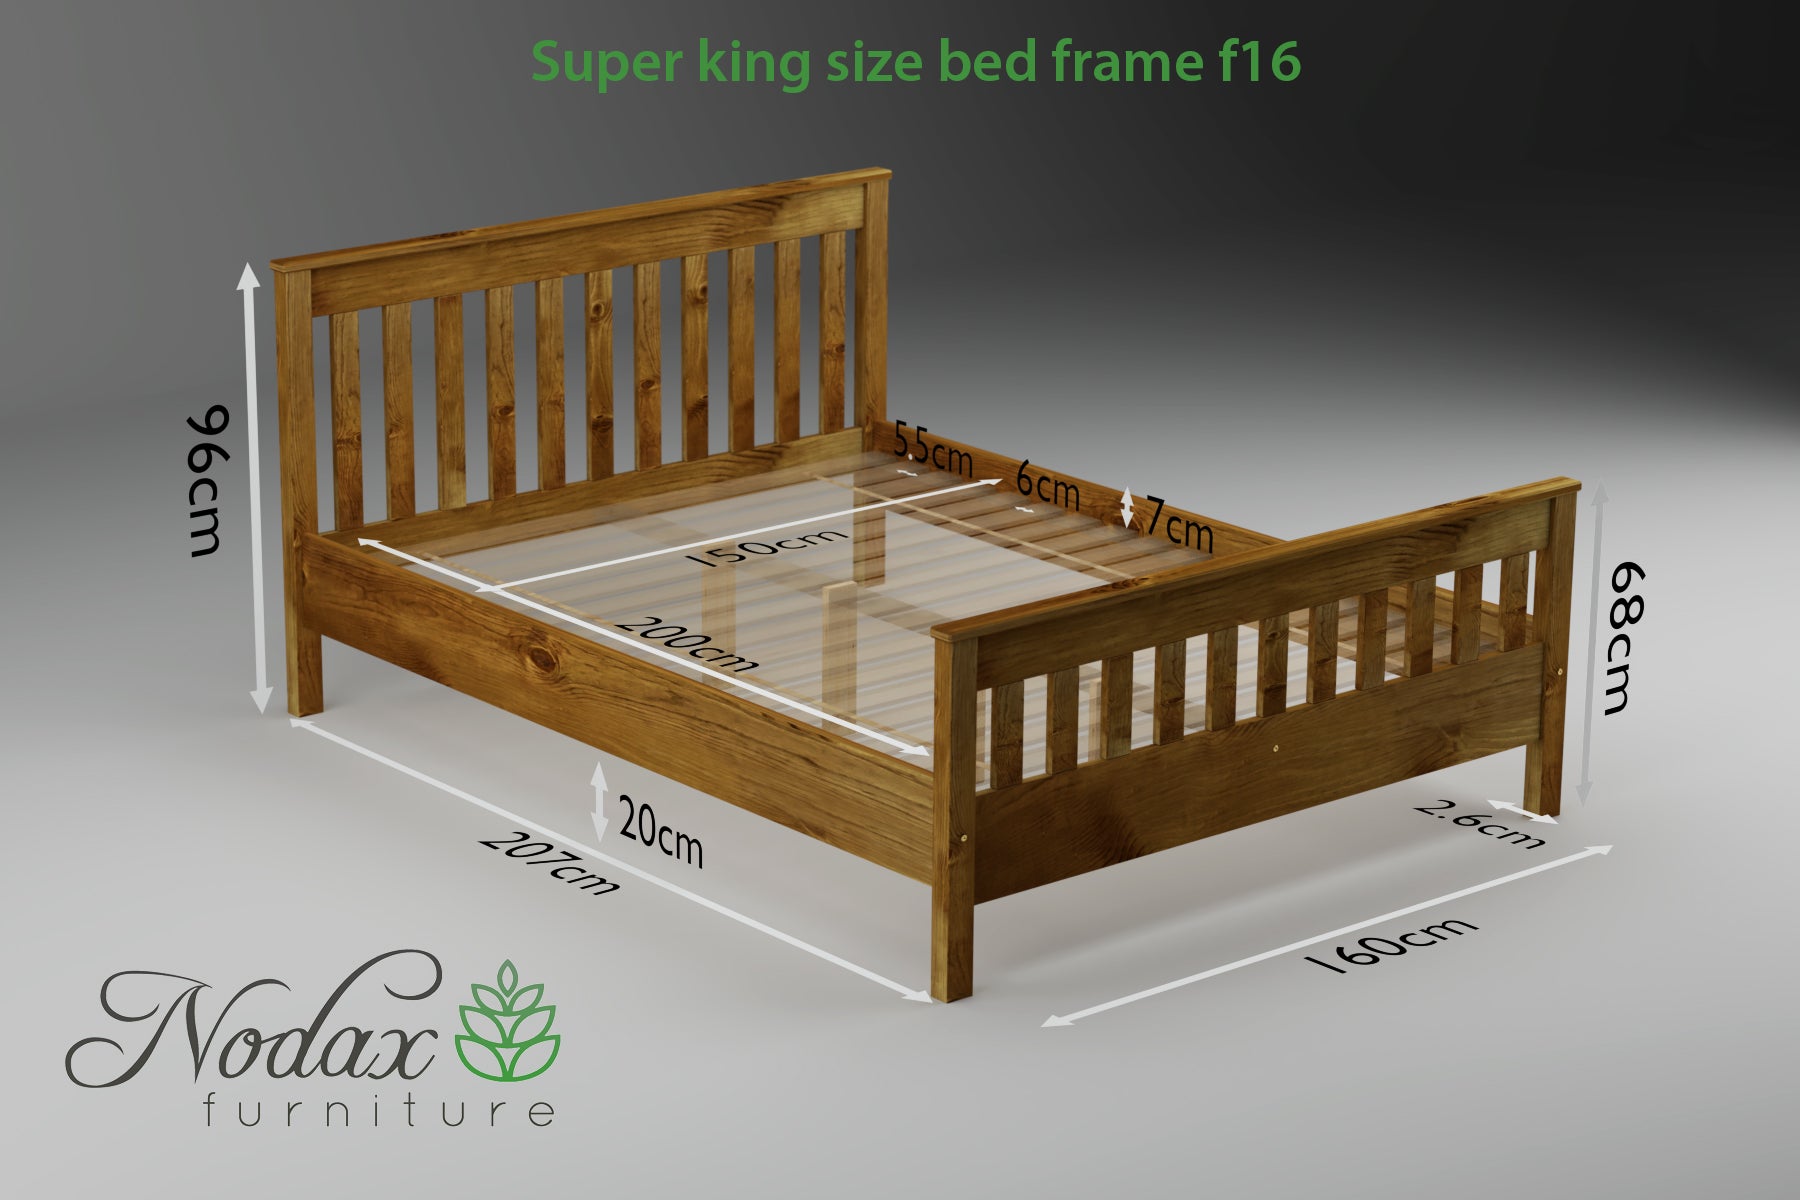 Wooden-slats-bed-frame